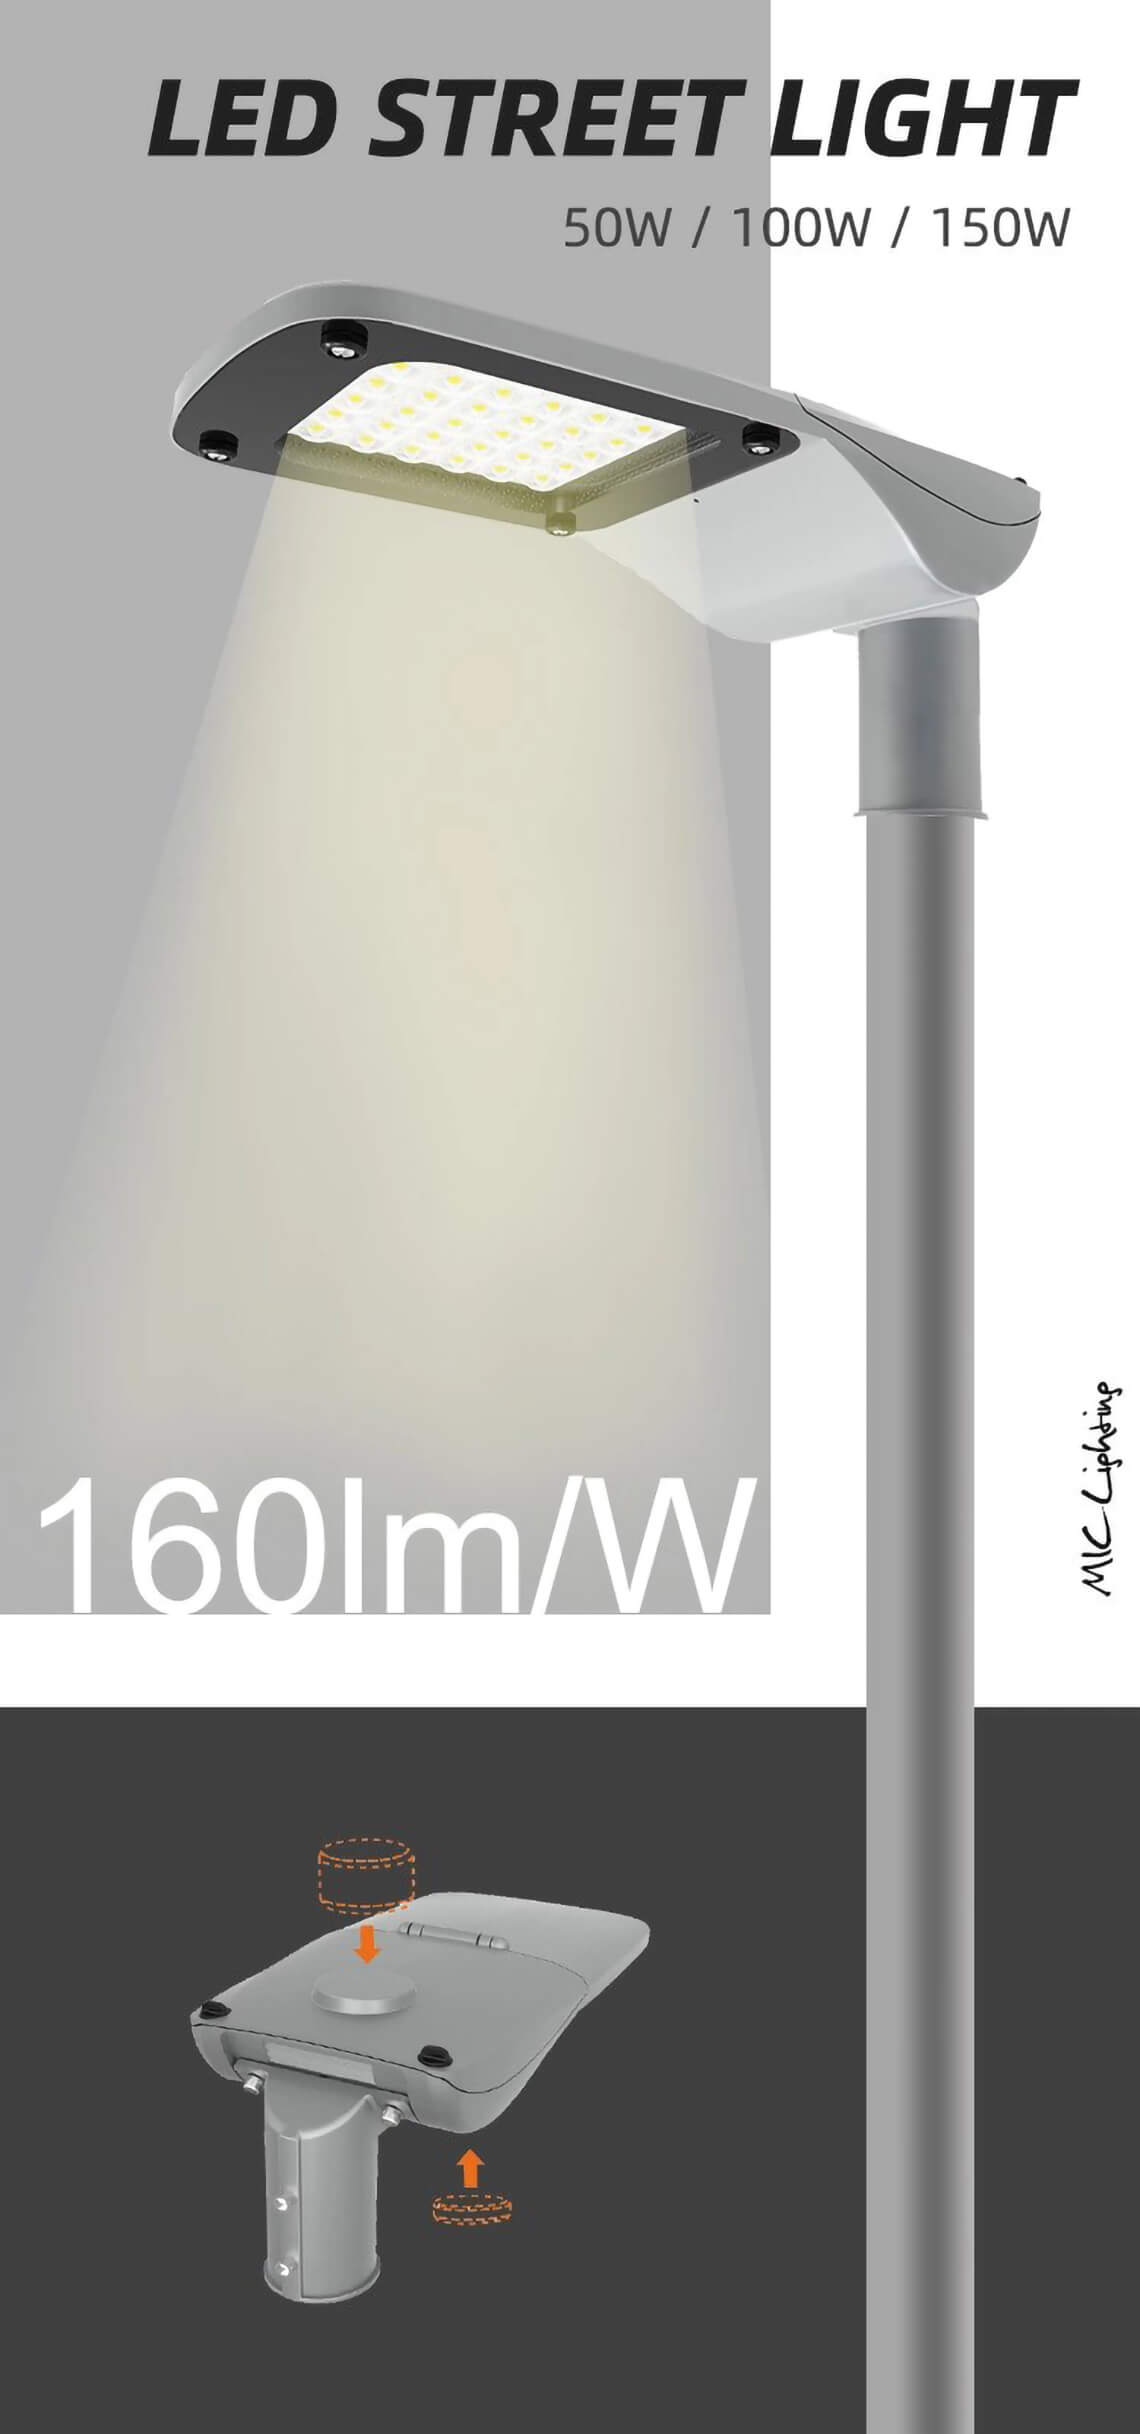 A Series 50w LED